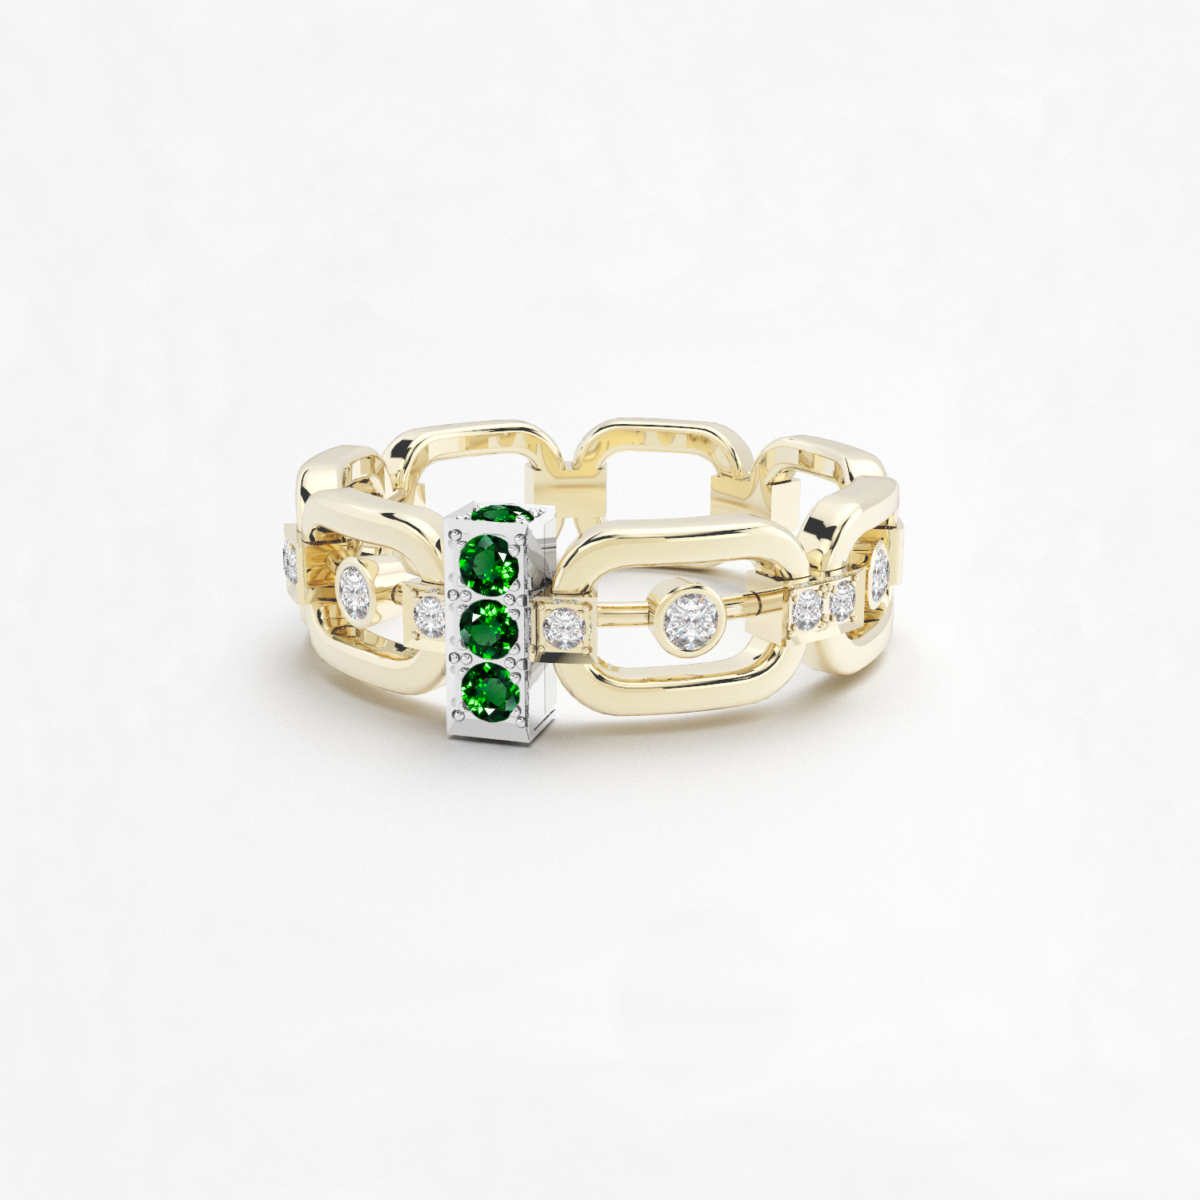 anneau maillon avec des diamants en or jaune 18 carats, barrette en or blanc avec des pierres grenats verts